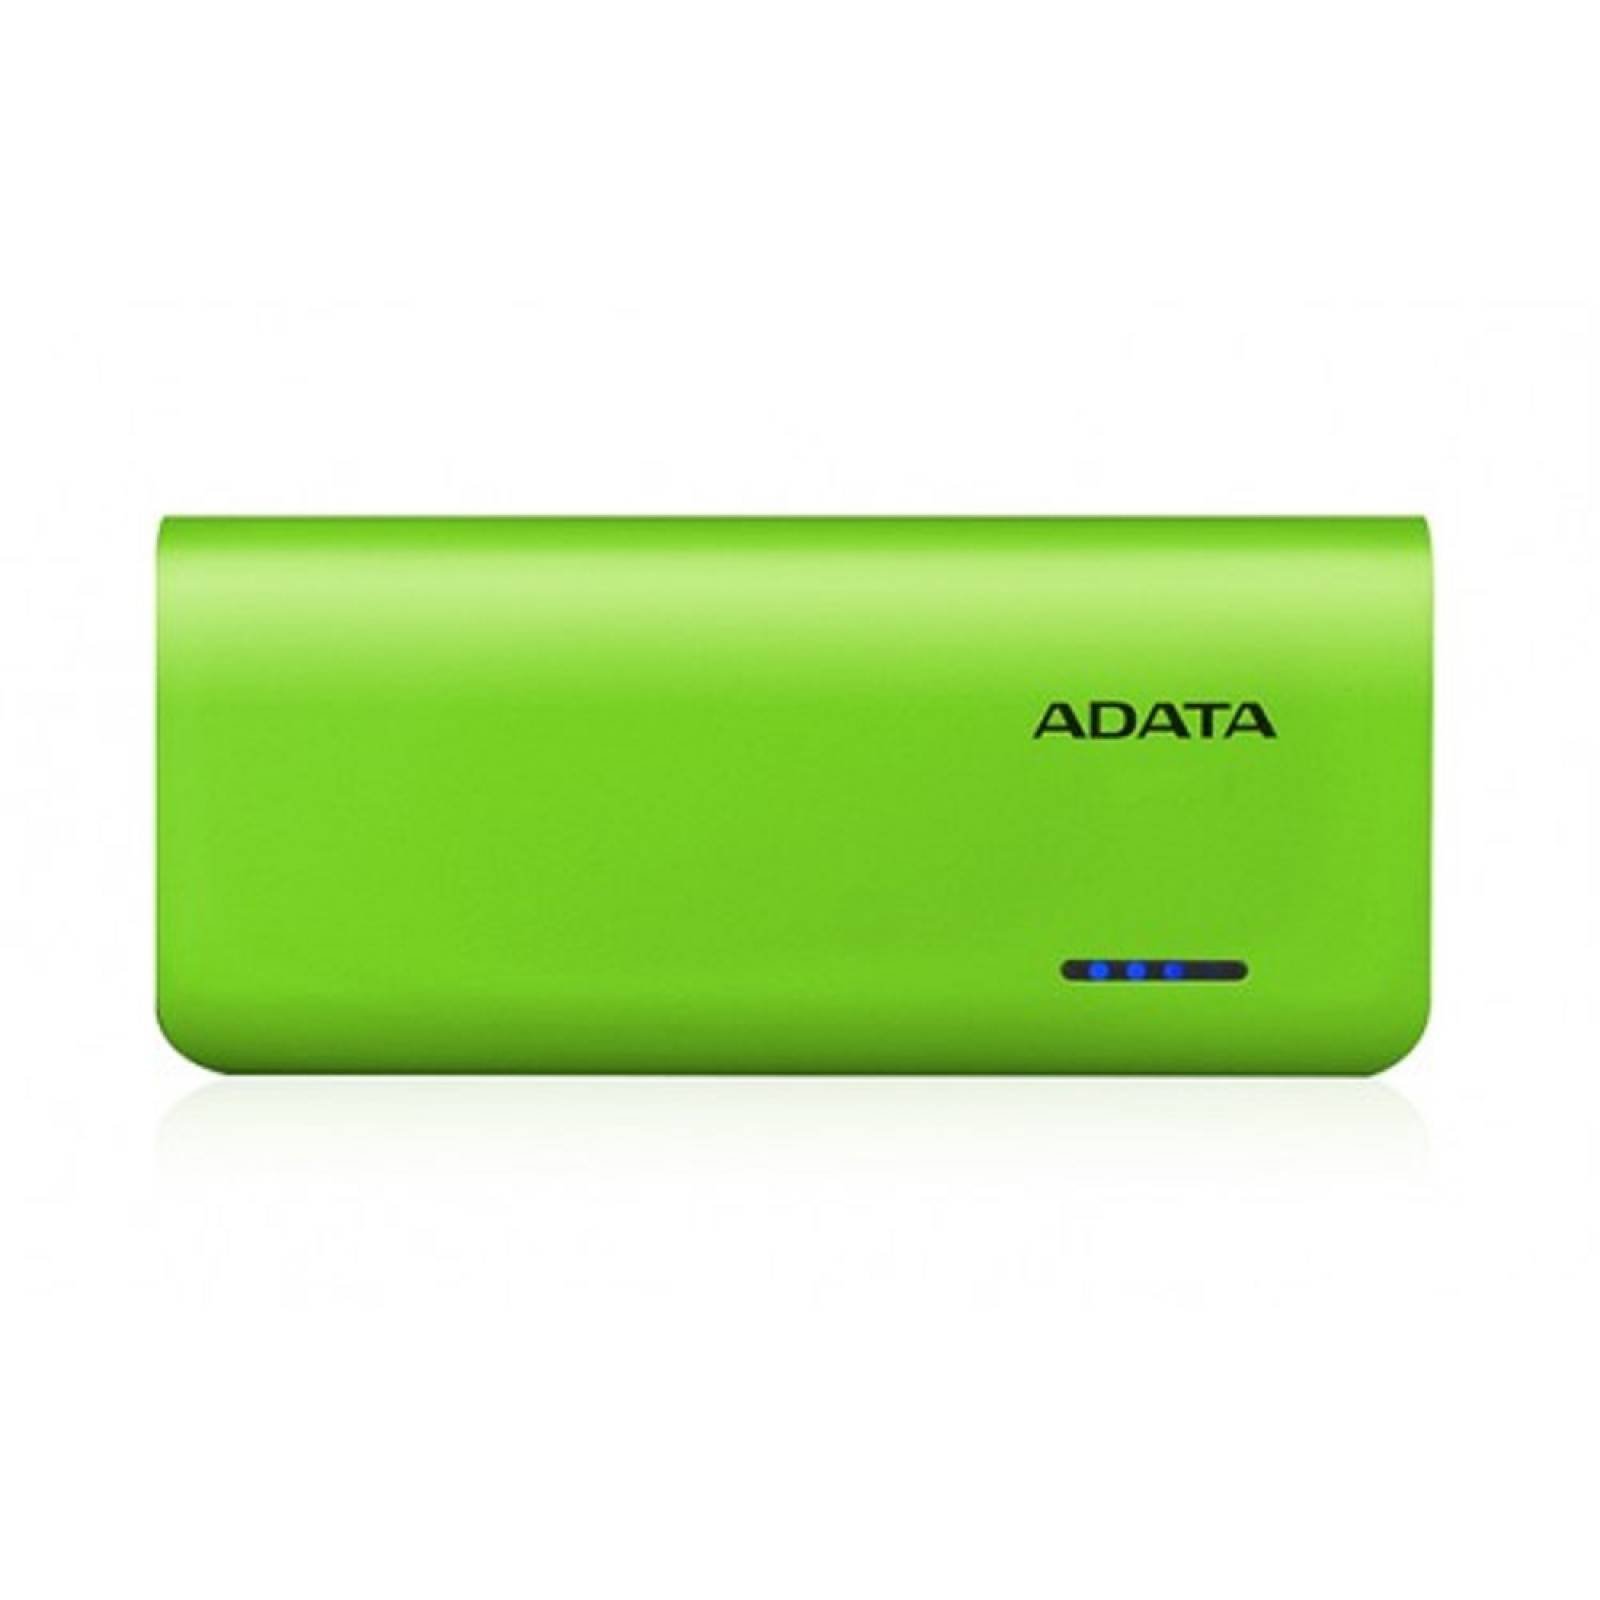 Power Bank ADATA PT100 verde 10000 mAh 2 entradas USB